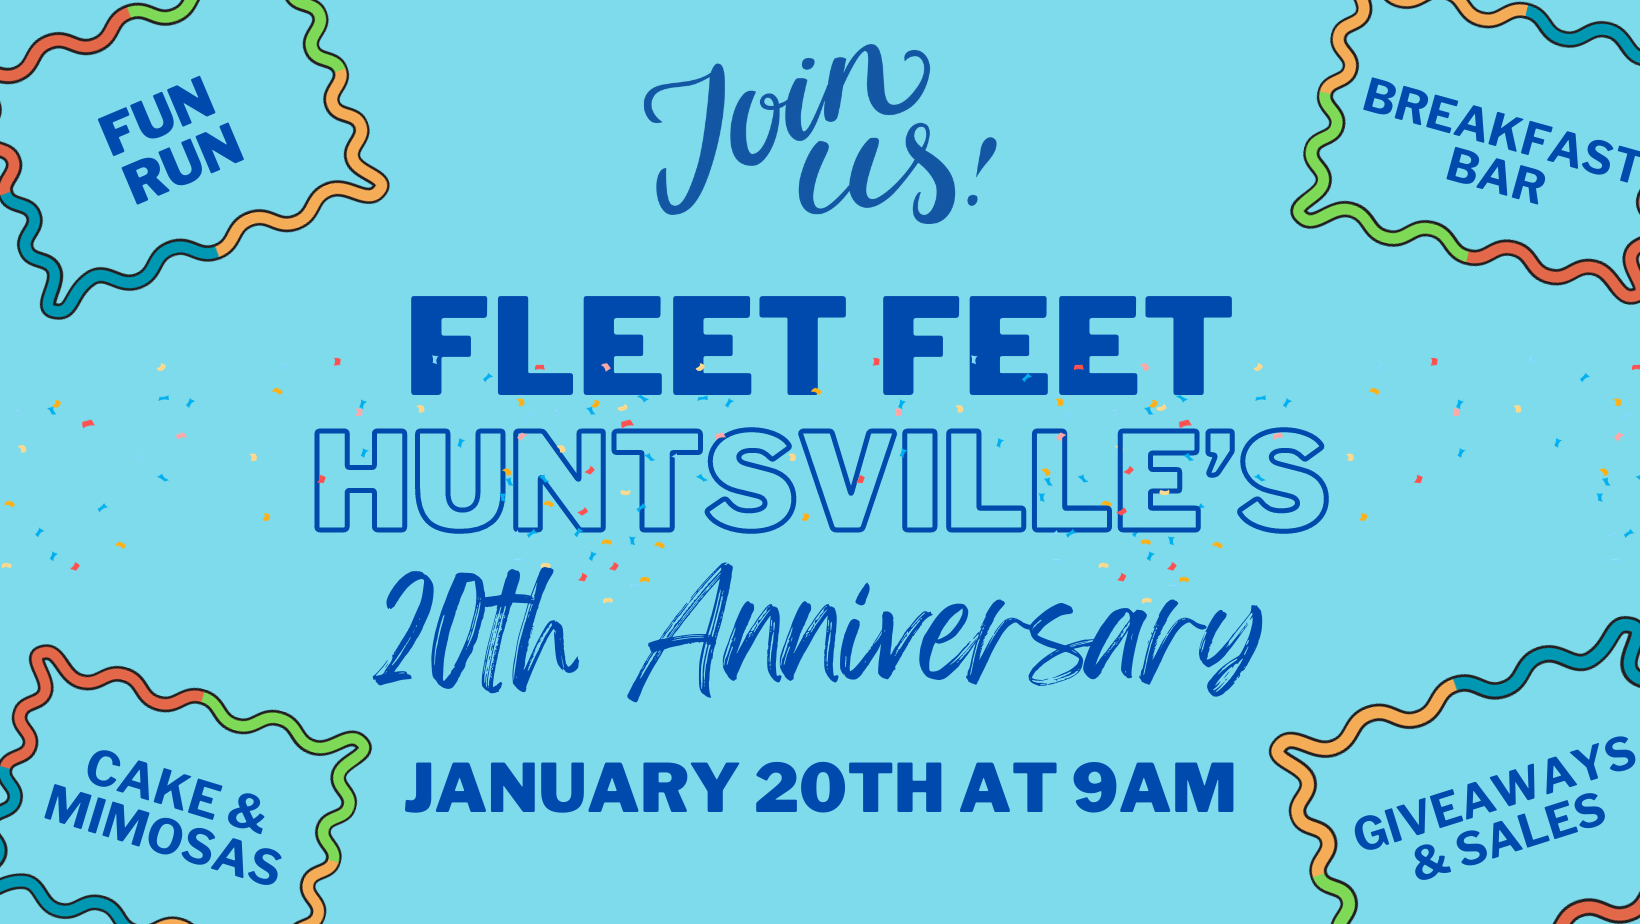 Huntsville's 20th Anniversary - Fleet Feet Sports Huntsville